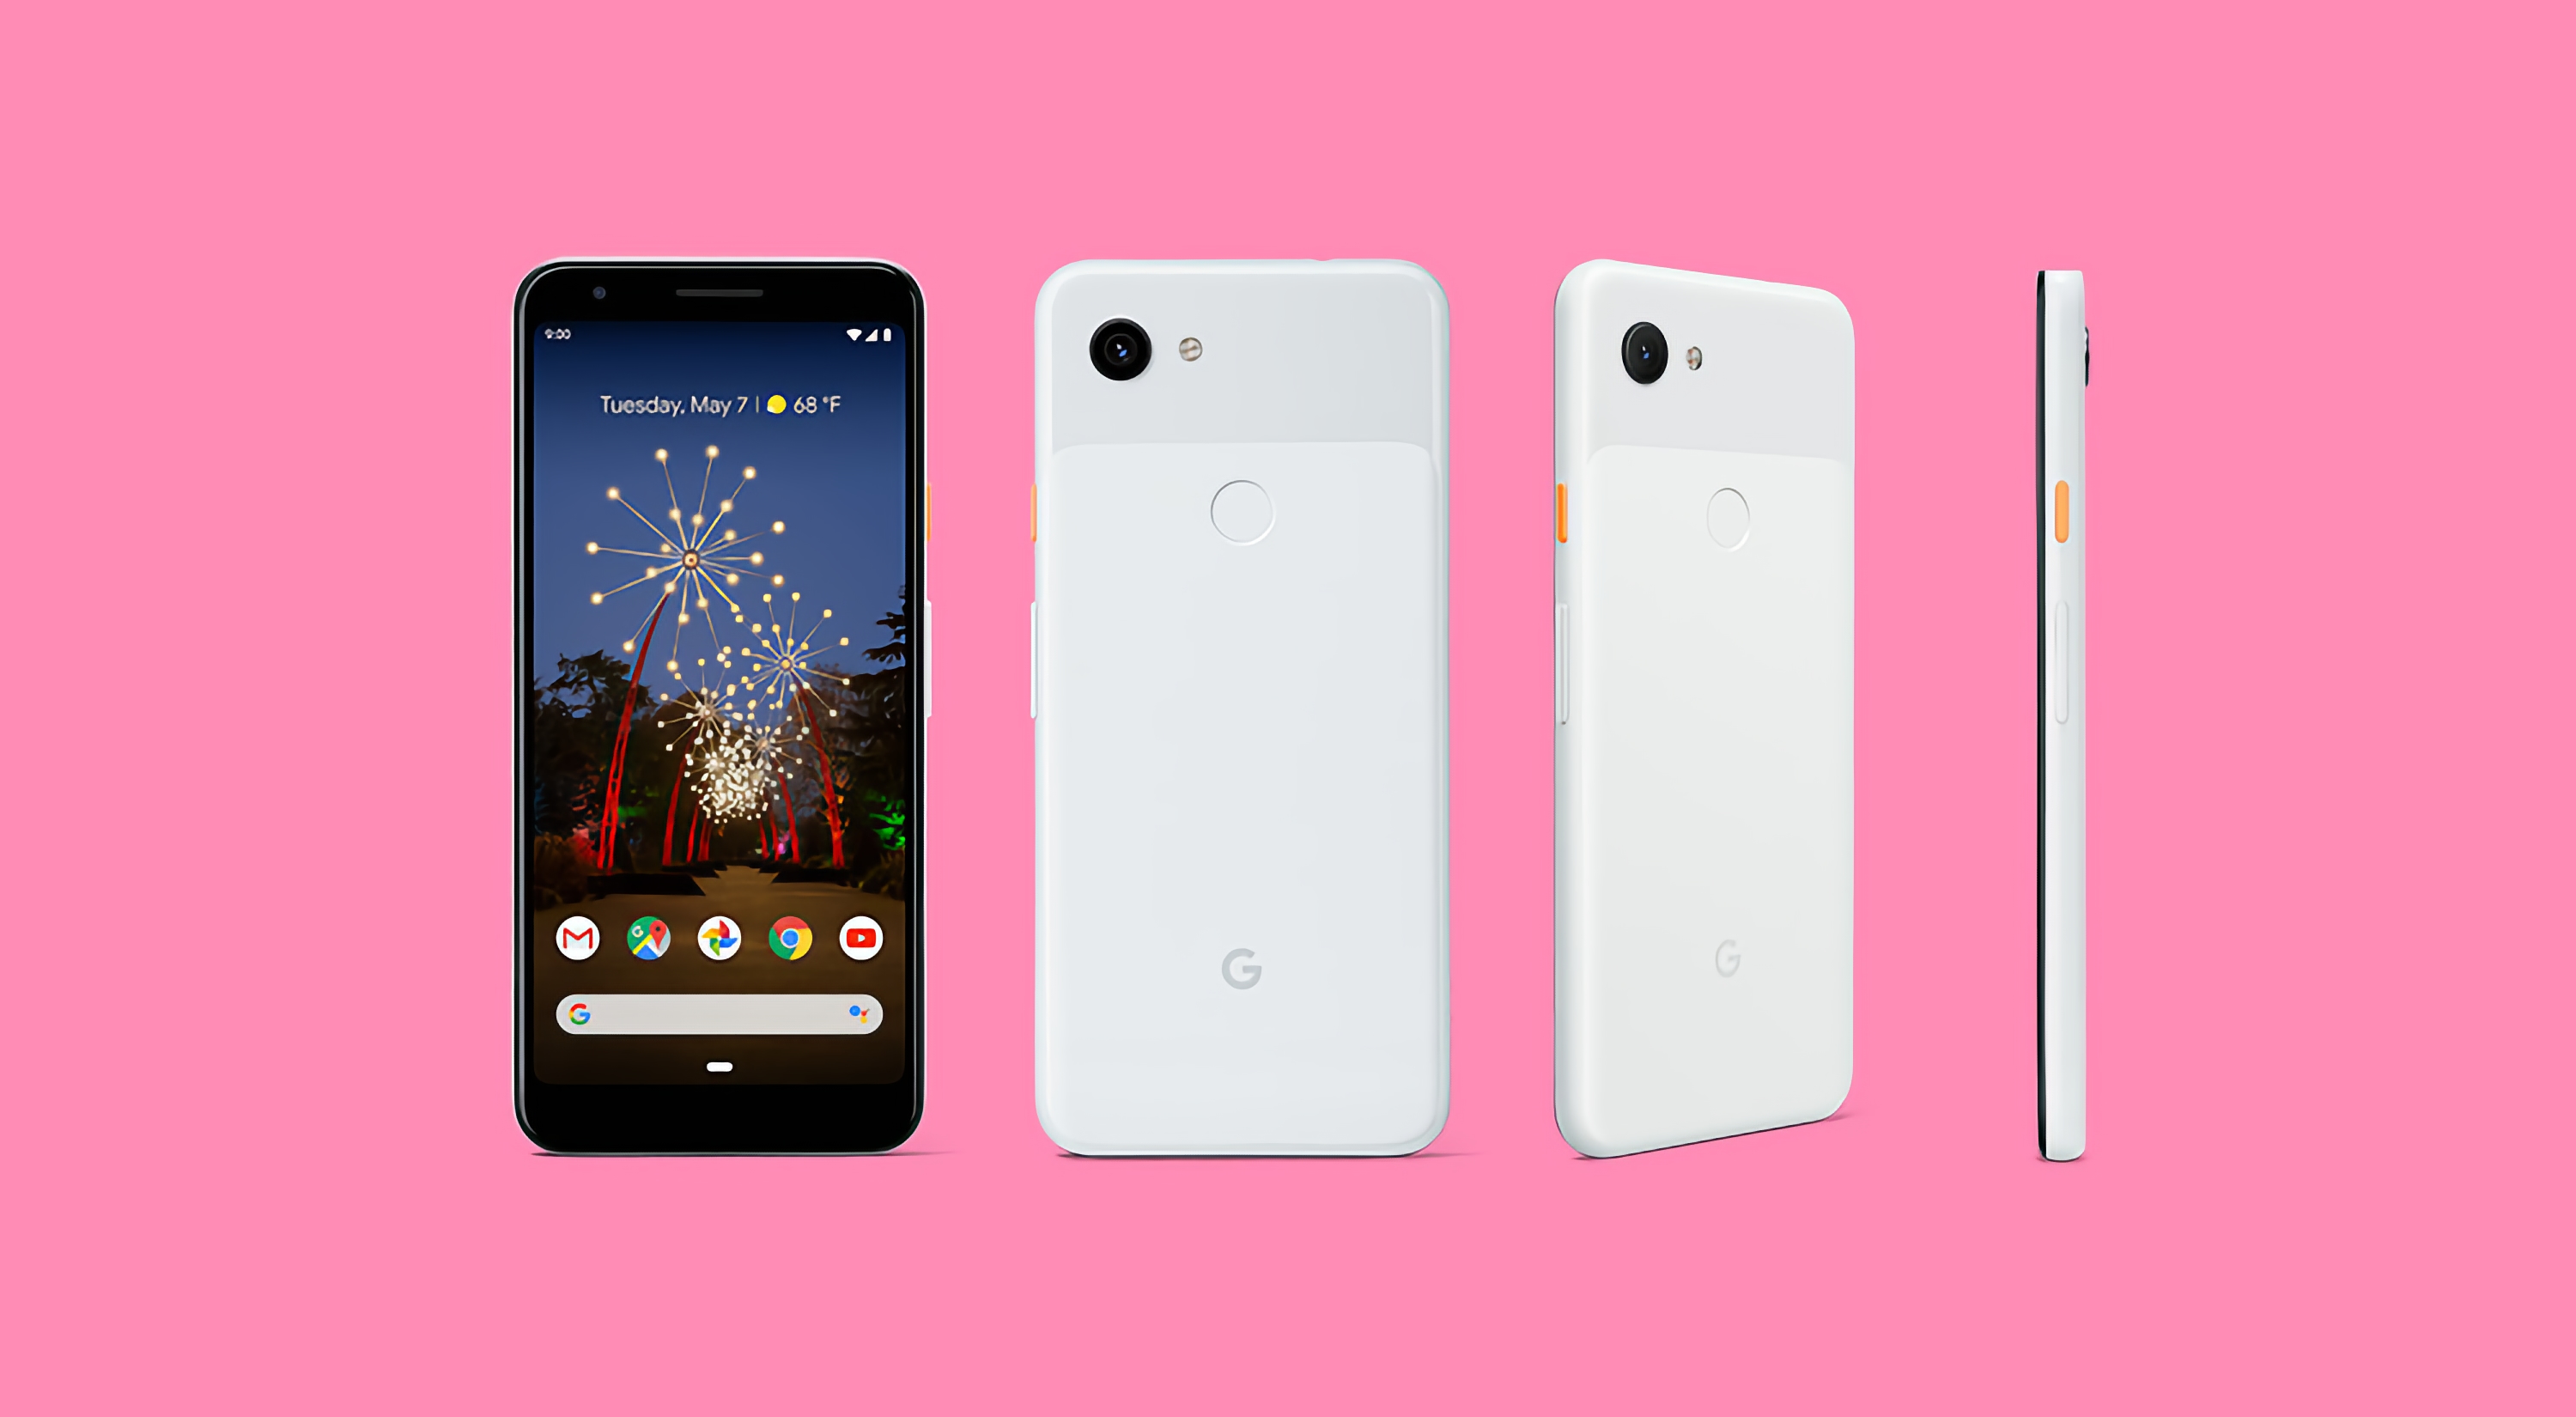 Vaya vuelta de tuerca: los Pixel 3a y Pixel 3a XL económicos de Google recibirán Android 12L, mientras que el buque insignia Pixel 3 y Pixel 3 XL no lo harán